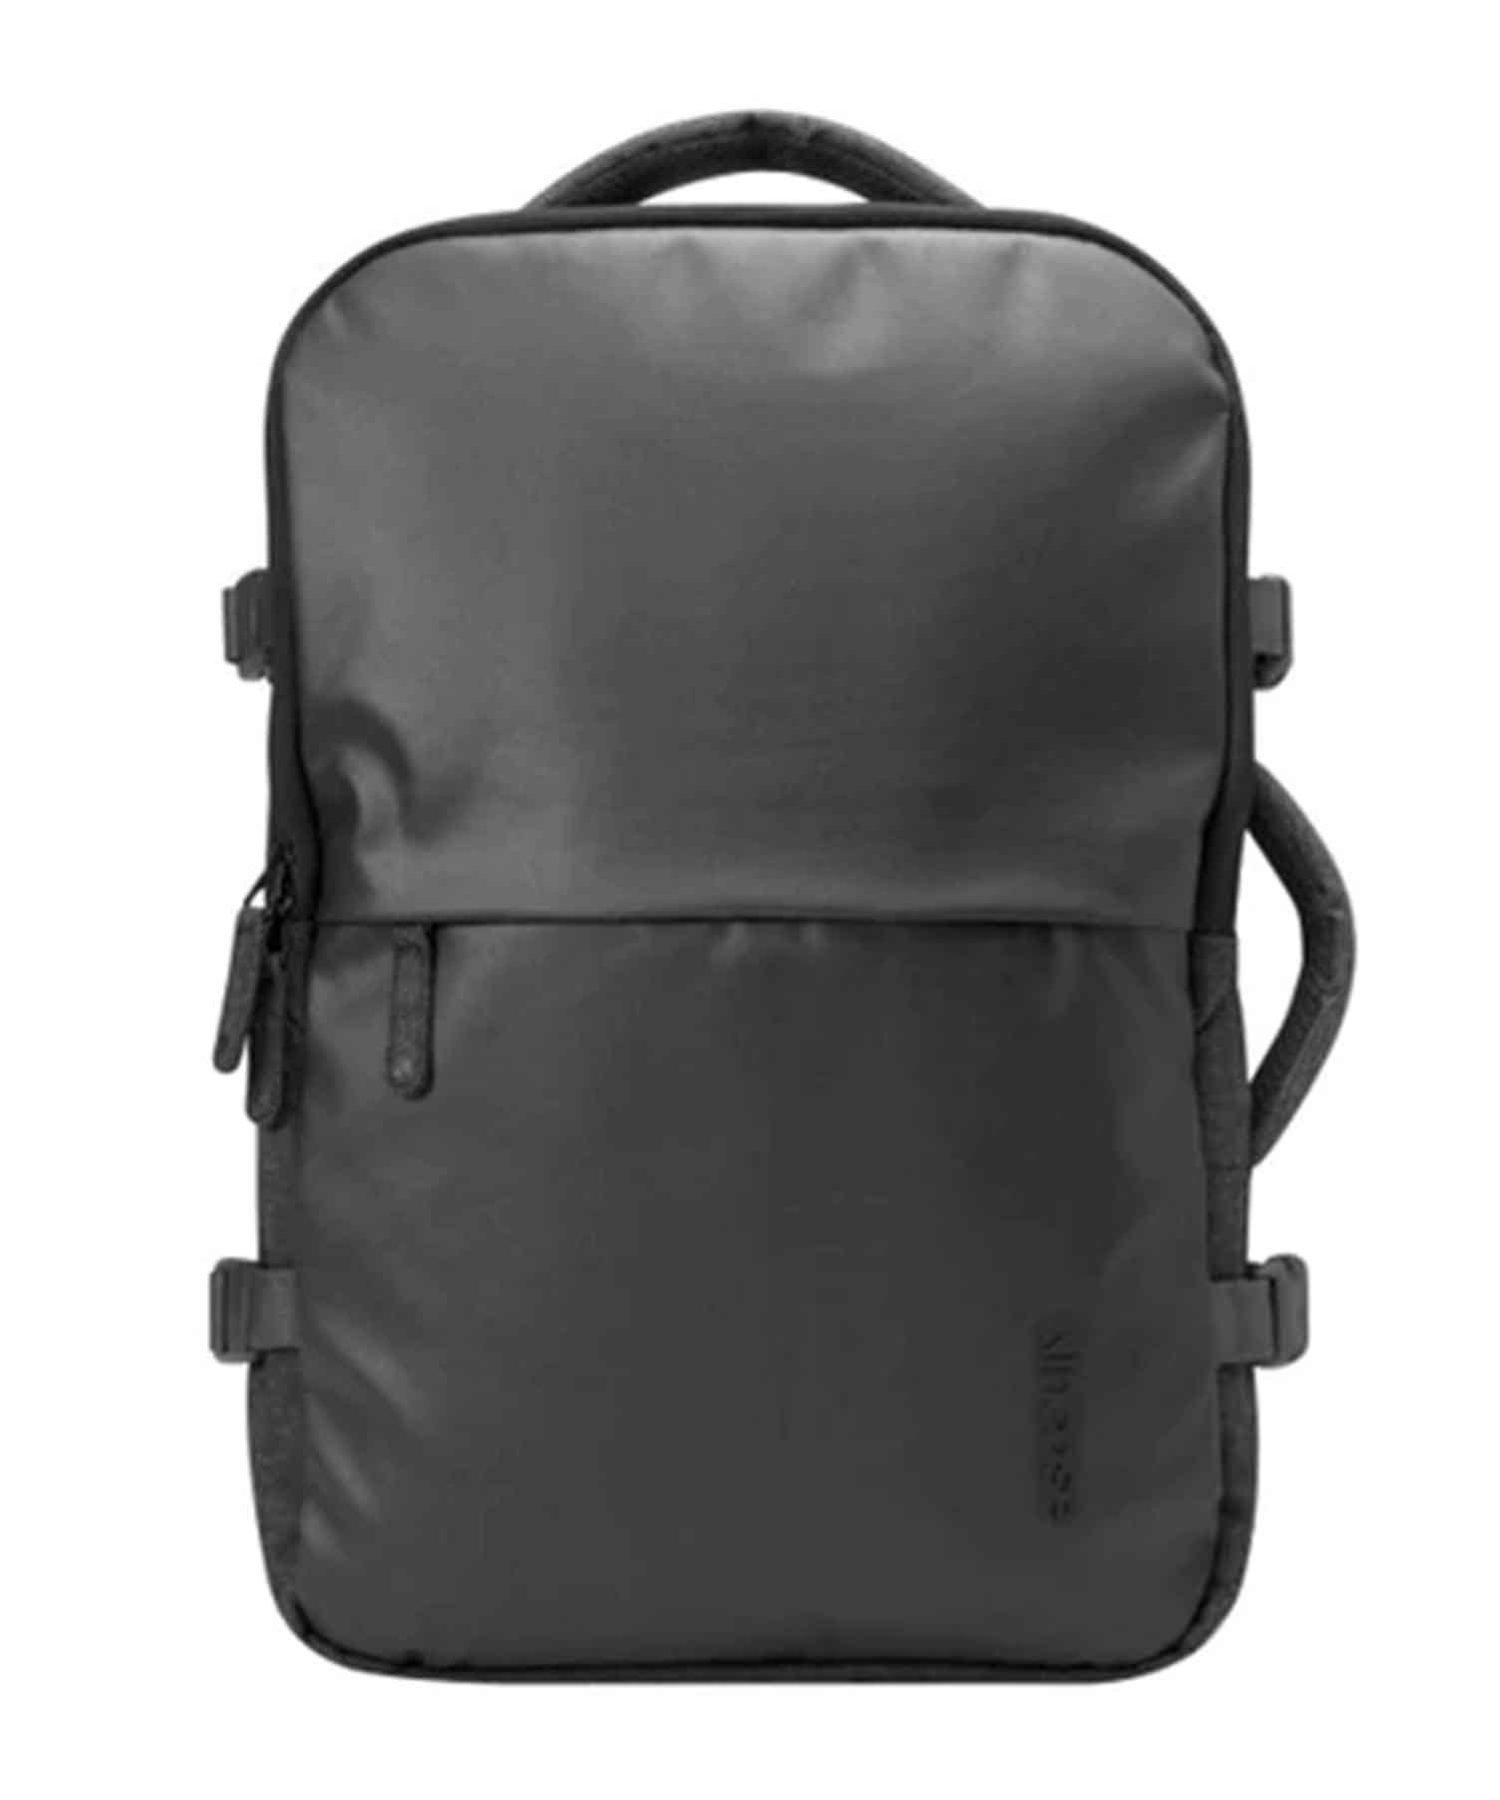 インケース ビジネスリュック メンズ Incase (U)CL90004 EO Travel Backpack 16inch バックパック Incase インケース バッグ リュック・バックパック ブラック【送料無料】